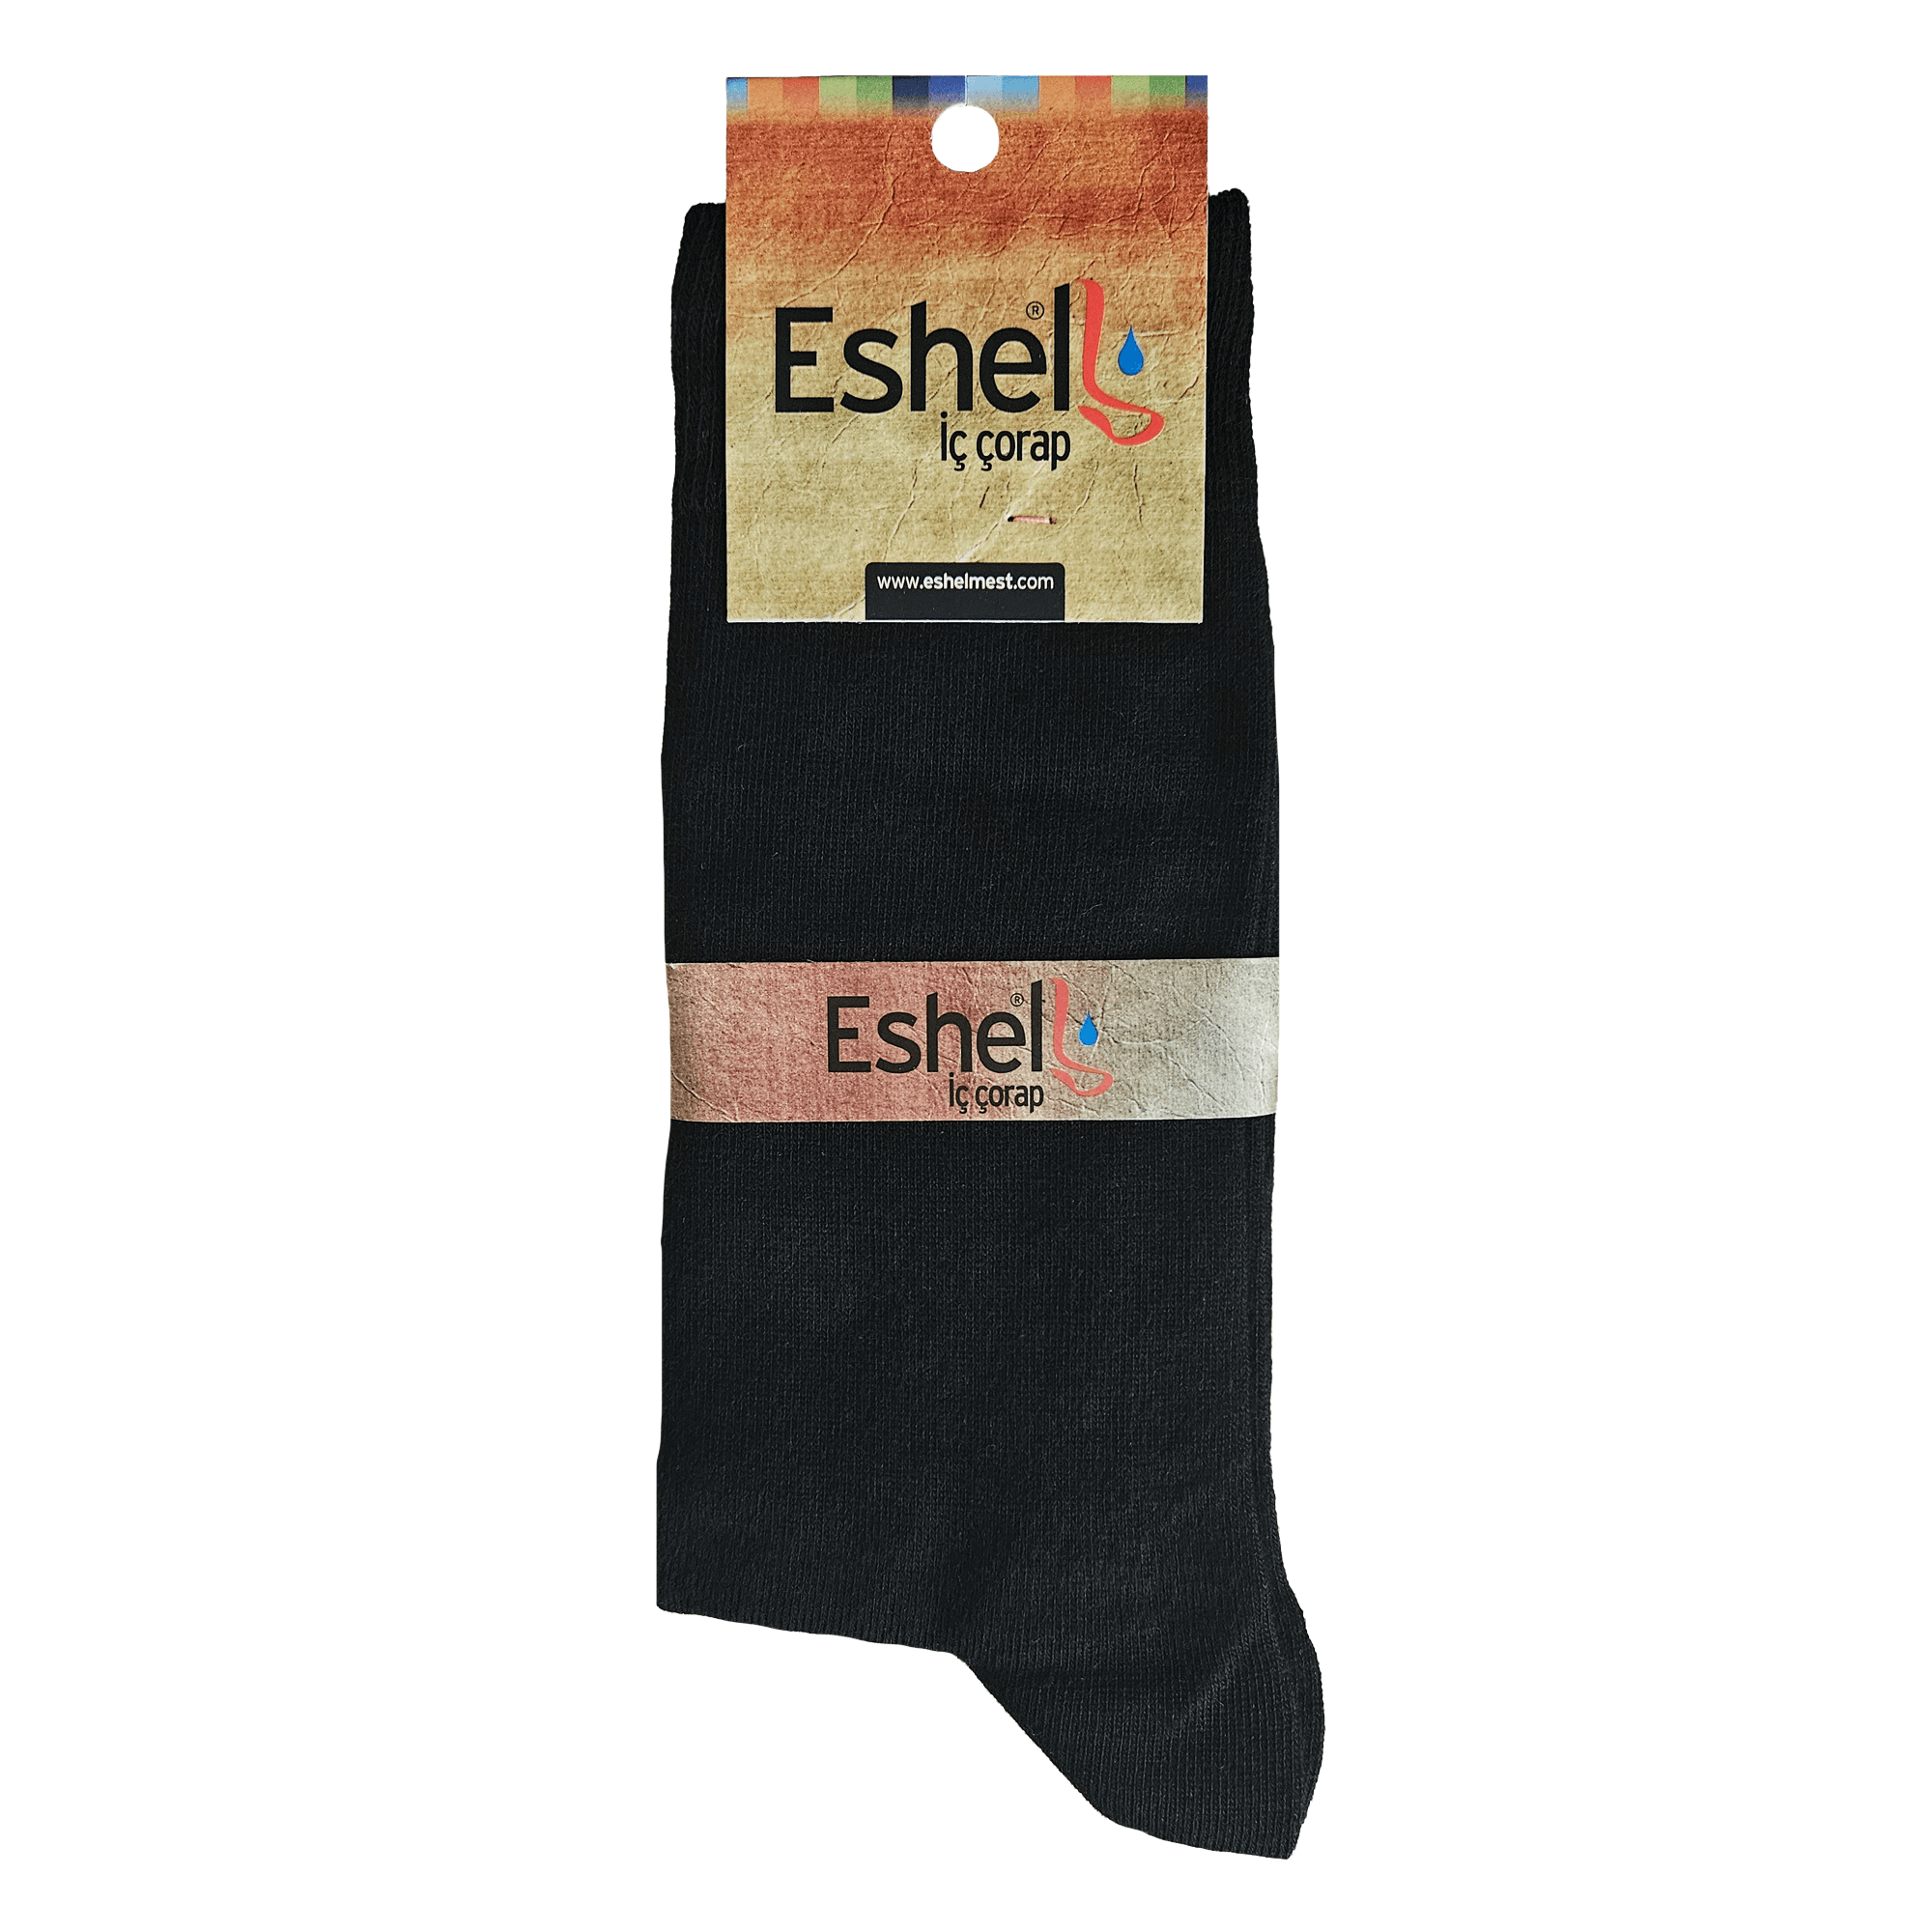 Eshel Mest Ömrünü Uzatmak İçin Pamuklu Çorap,Burun Dikişsiz Mest İçi Siyah Çorap - (41-44)